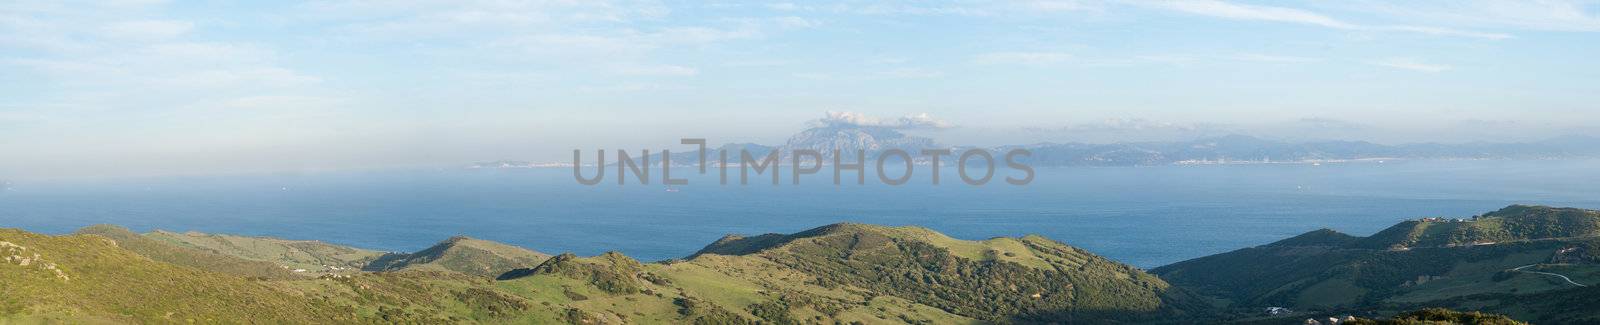 Strait of Gibraltar, Morocco background by anytka